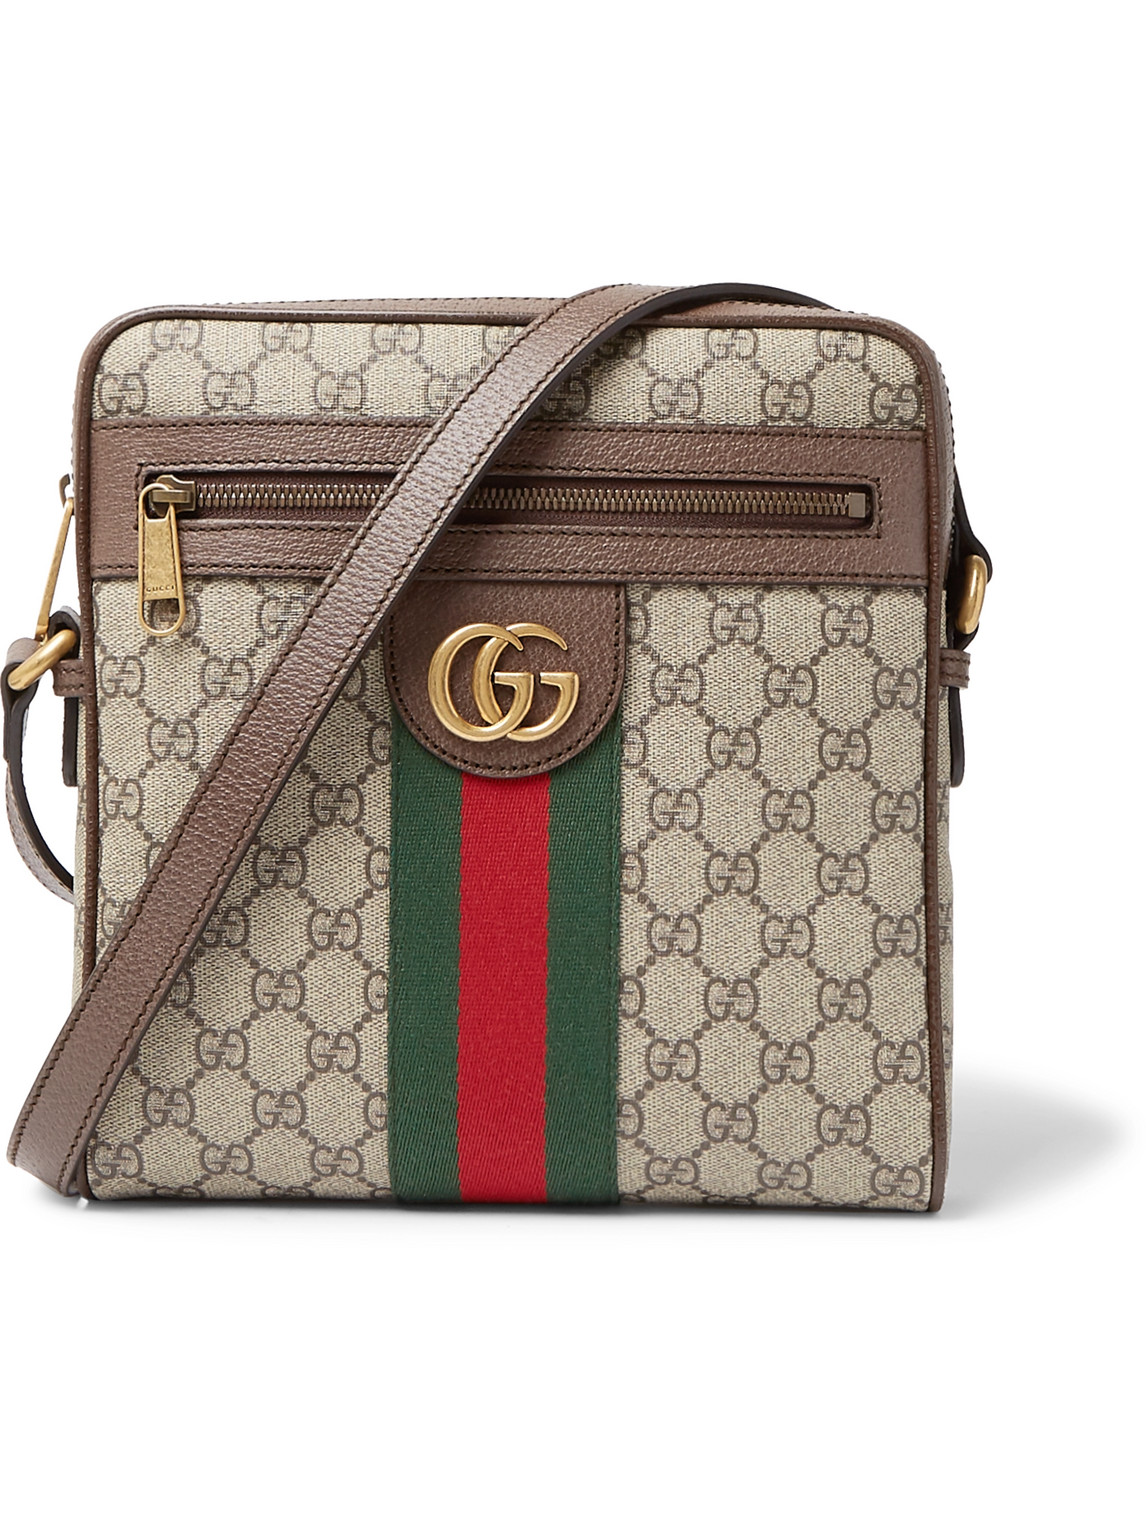 Gucci - Ophidia Leather-Trimmed Monogrammed Coated-Canvas Messenger Bag -  Men - Brown for Men